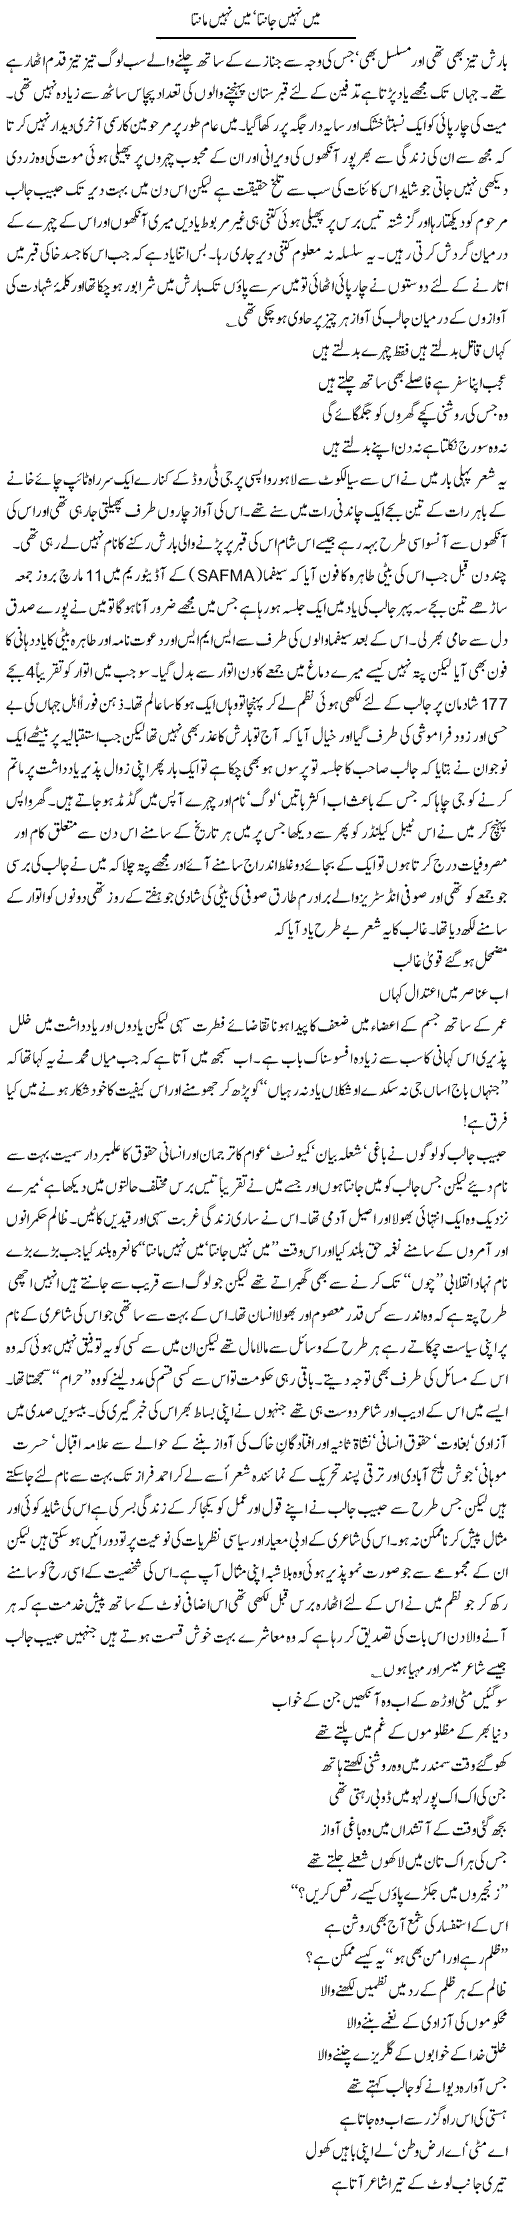 Great Habib Jalib Express Column Amjad Islam 18 March 2011